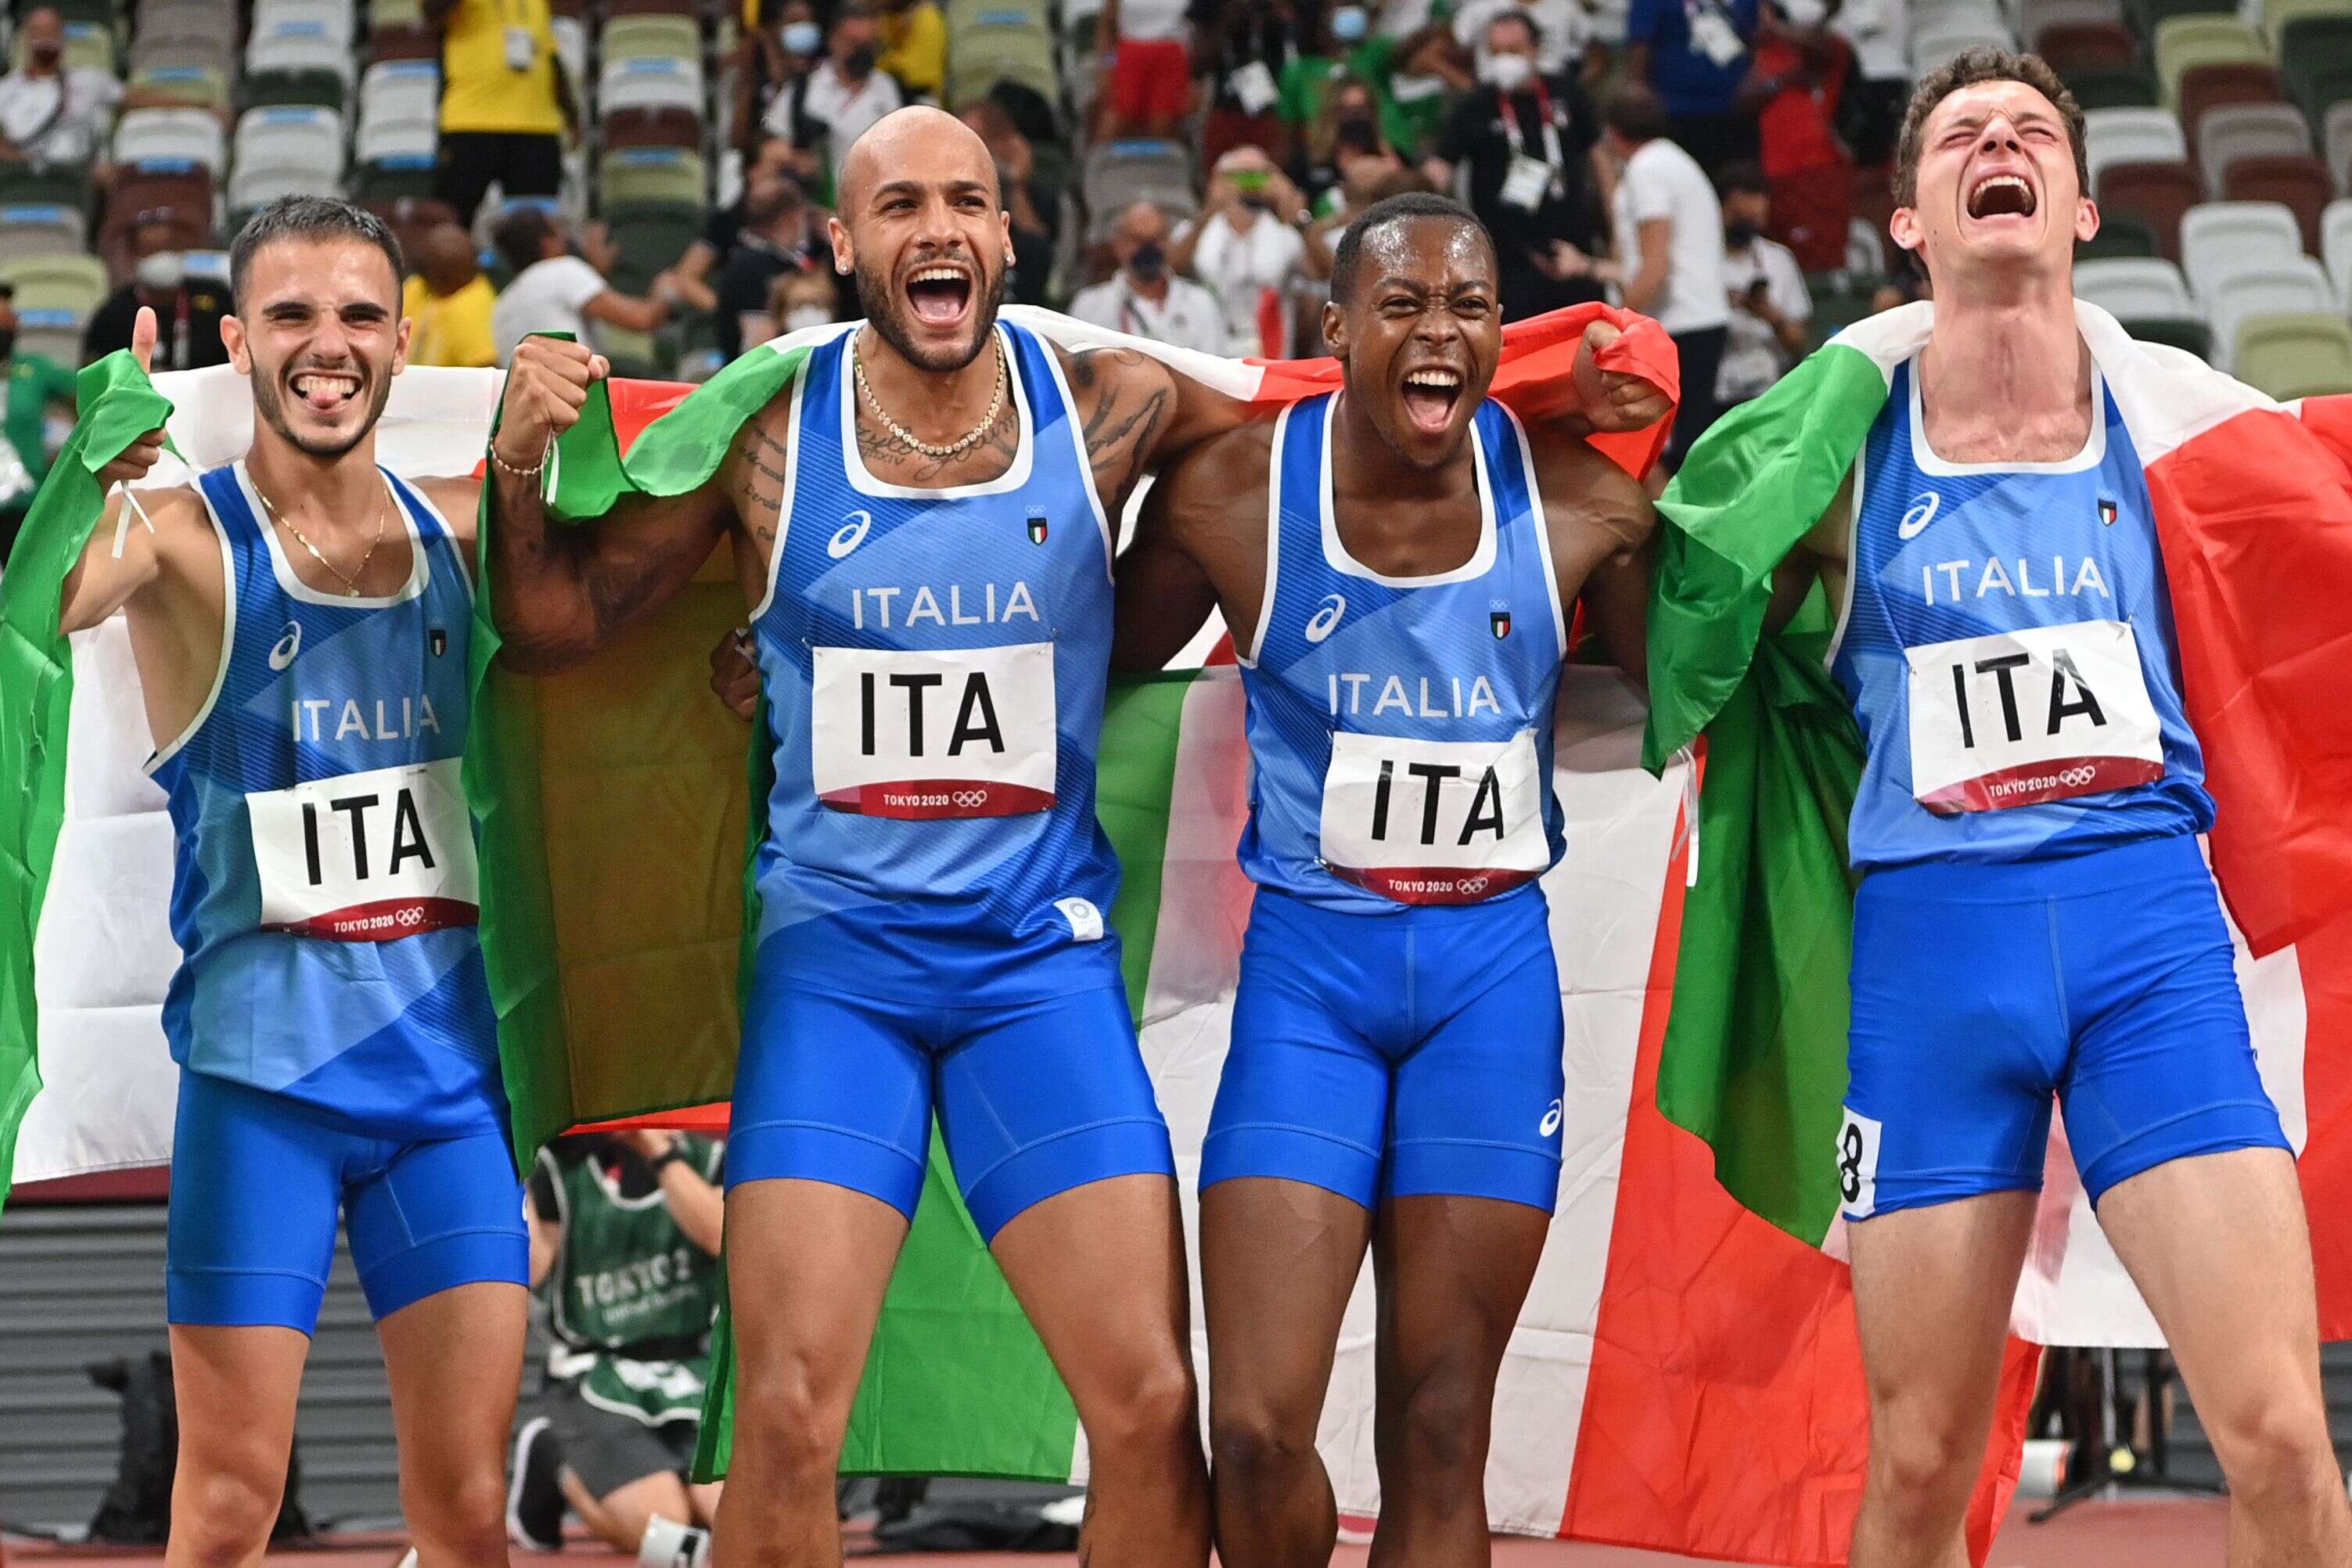 Avec notamment Lamont Marcell Jacobs (né au Texas d'un père américain et d'une mère italienne, 2e en partant de la gauche) et Eseosa Desalu (d'origine nigériane, 2e en partant de la droite) dans l'équipe qui a remporté le relais 4x100 mètres des Jeux olympiques de Tokyo, l'Italie se pose désormais la question de l'accès à la nationalité, qui tient davantage au sang qu'au droit du sol pour le moment.